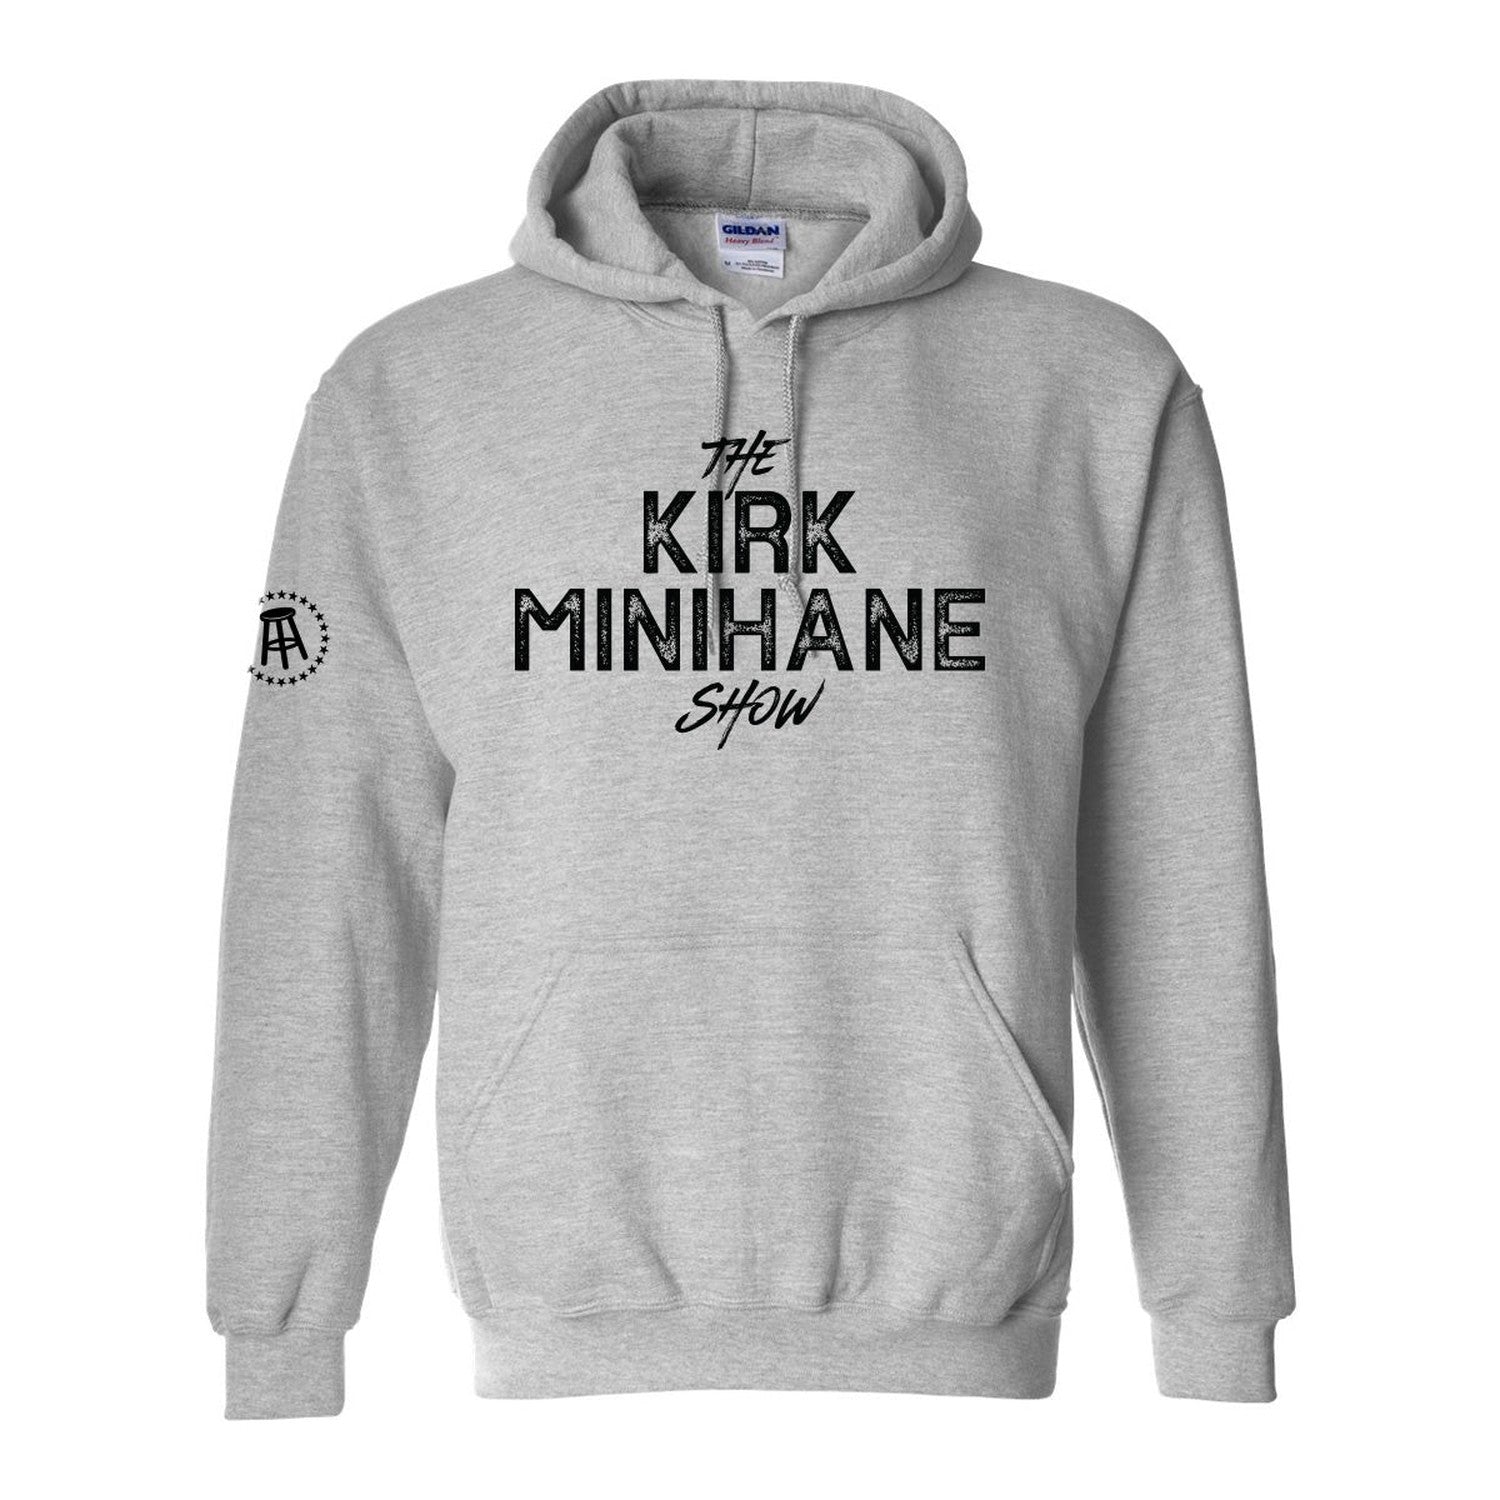 The Kirk Minihane Show Hoodie